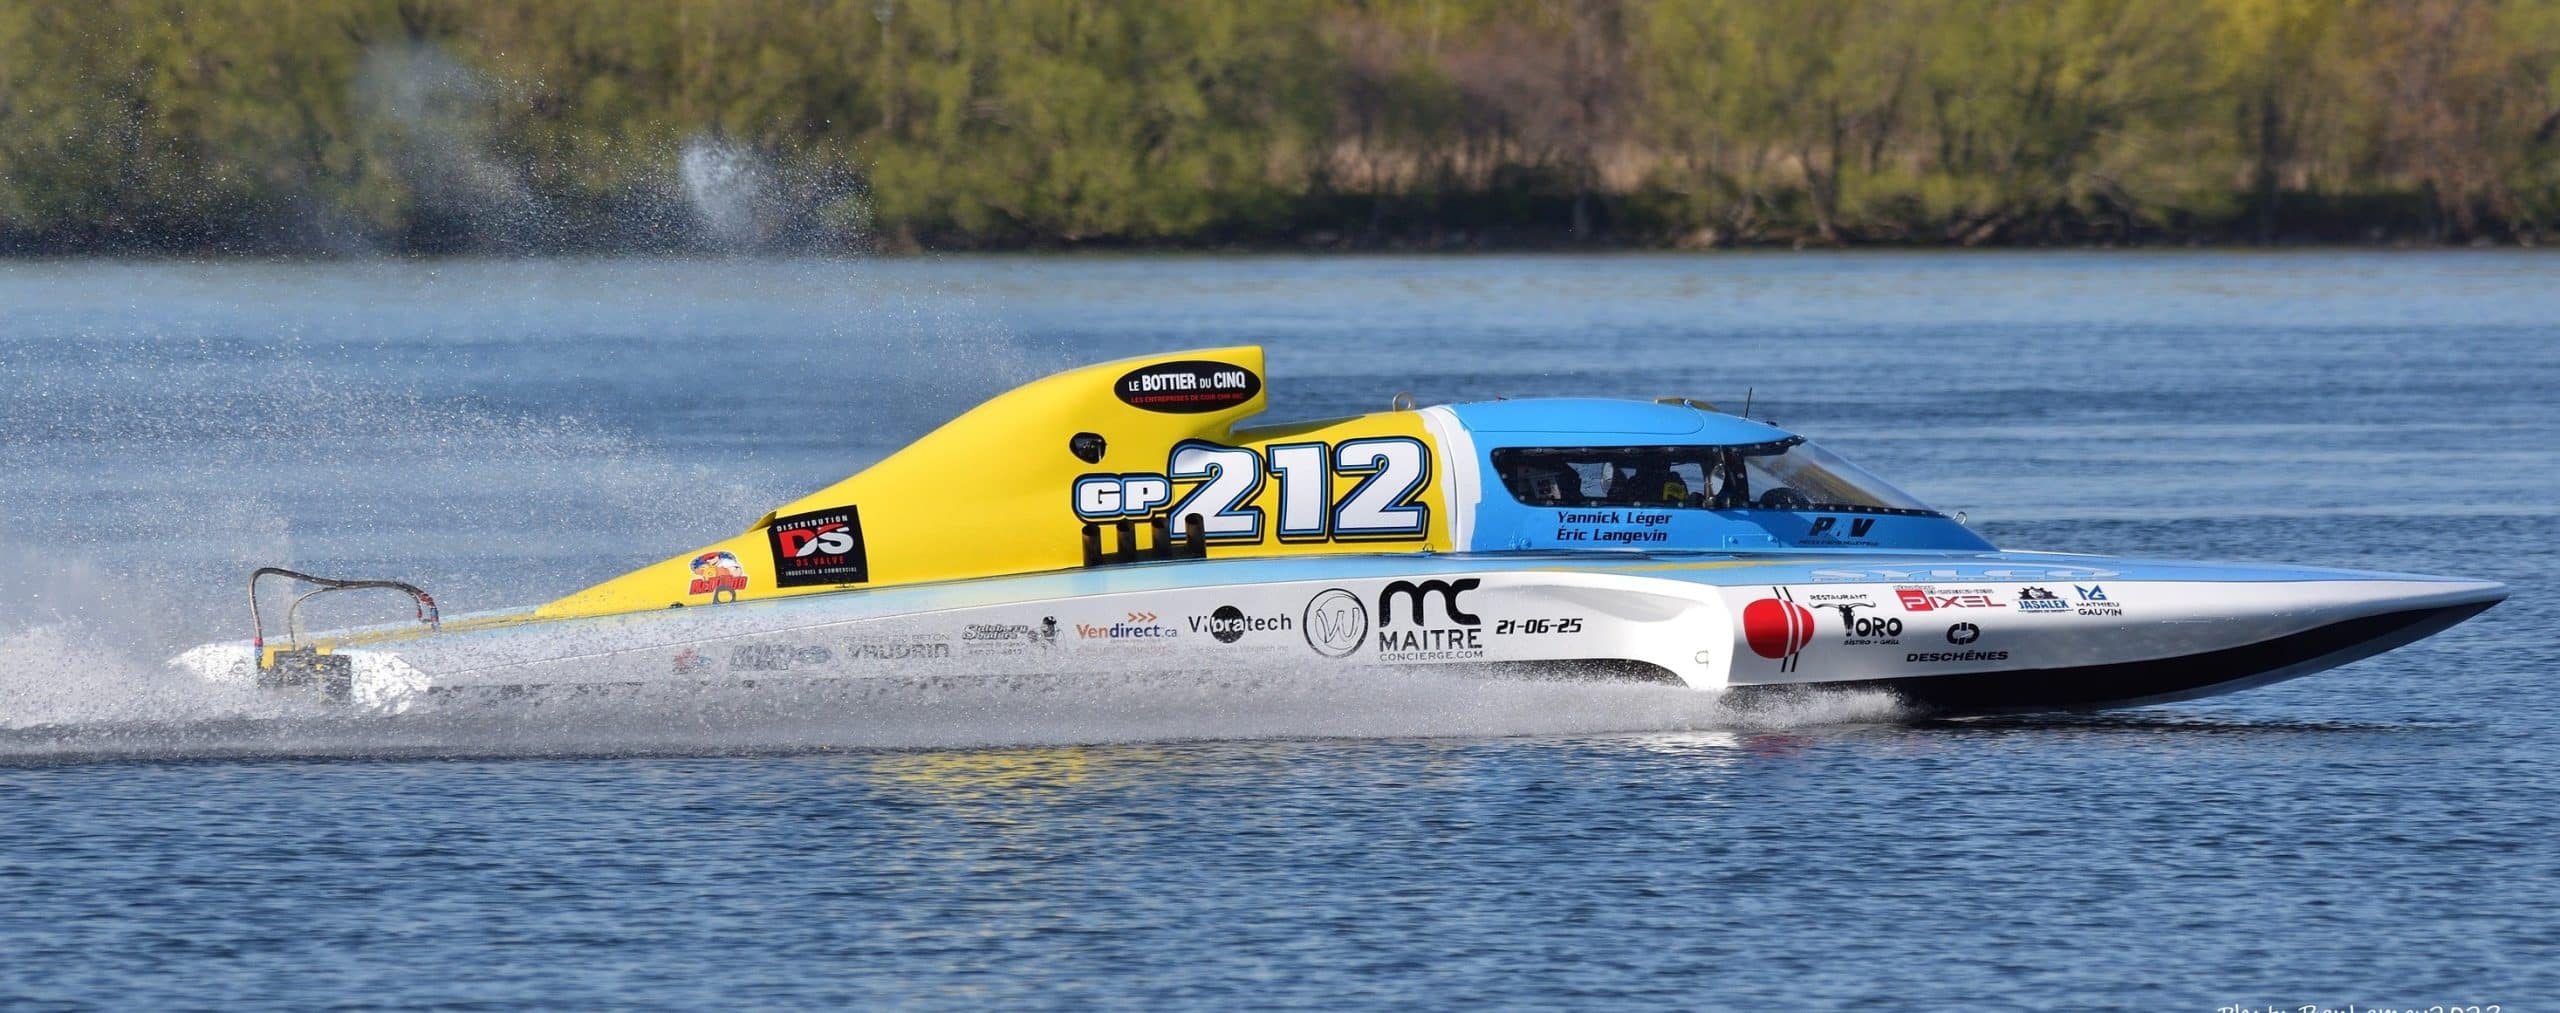 Une nouvelle saison de courses d’hydroplanes sera lancée au Maryland